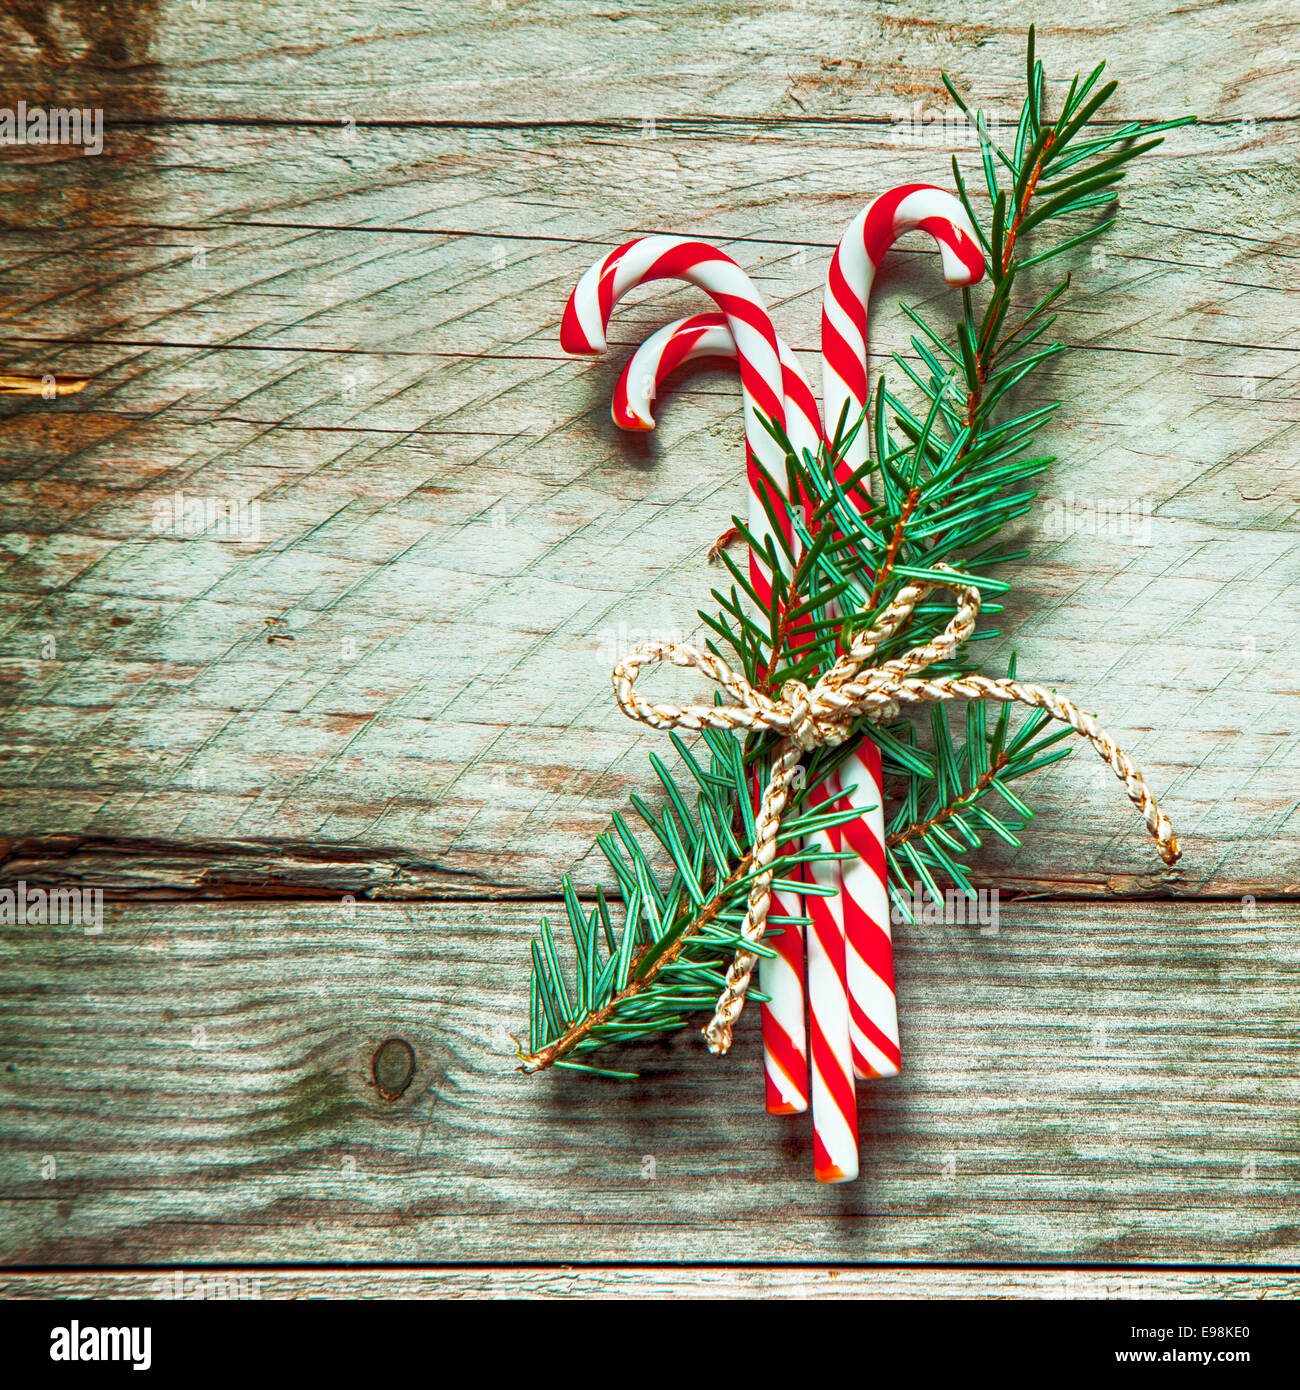 Bunt gestreifte rote und weiße Weihnachten candy Canes in einem Bundle mit Zweige der Kiefer mit Schnur an einem rustikalen hölzernen Hintergrund, quadratisches Format mit Exemplar gebunden Stockfoto